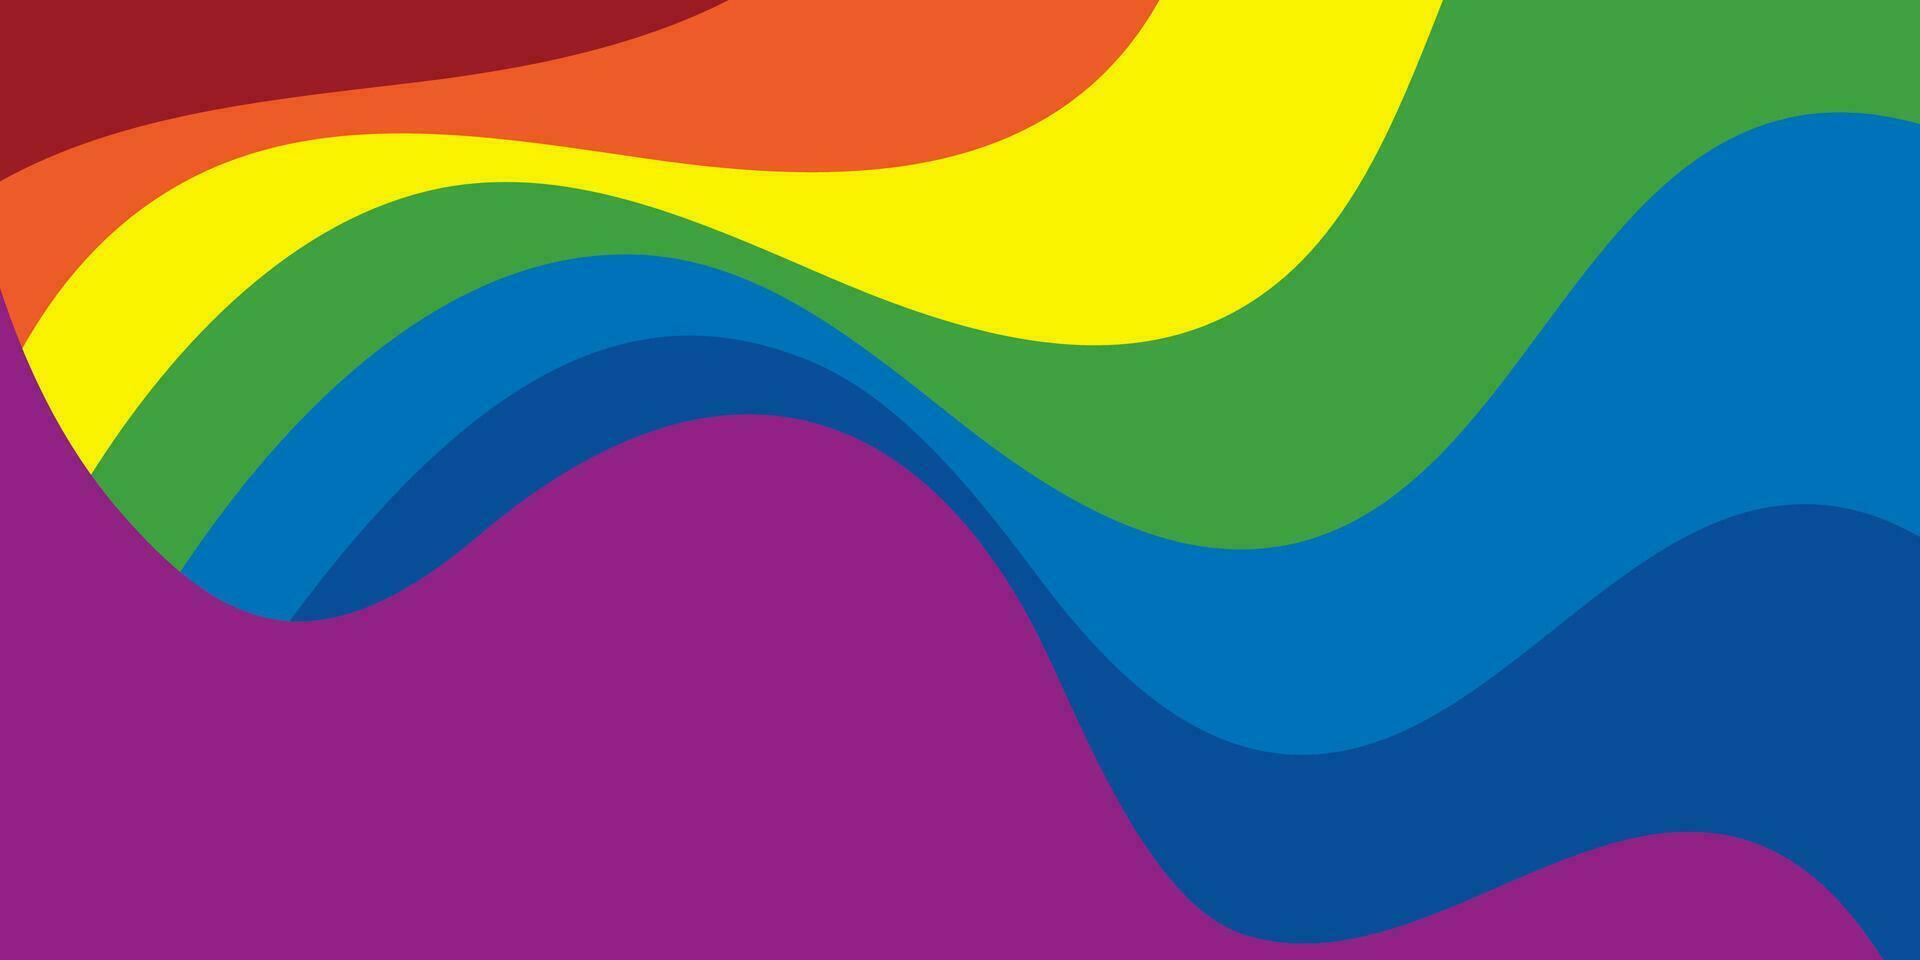 abstrakt färgrik bakgrund, blå, röd, gul, grön, rosa, orange, och lila, geometrisk runda form mönster. vektor illustration.